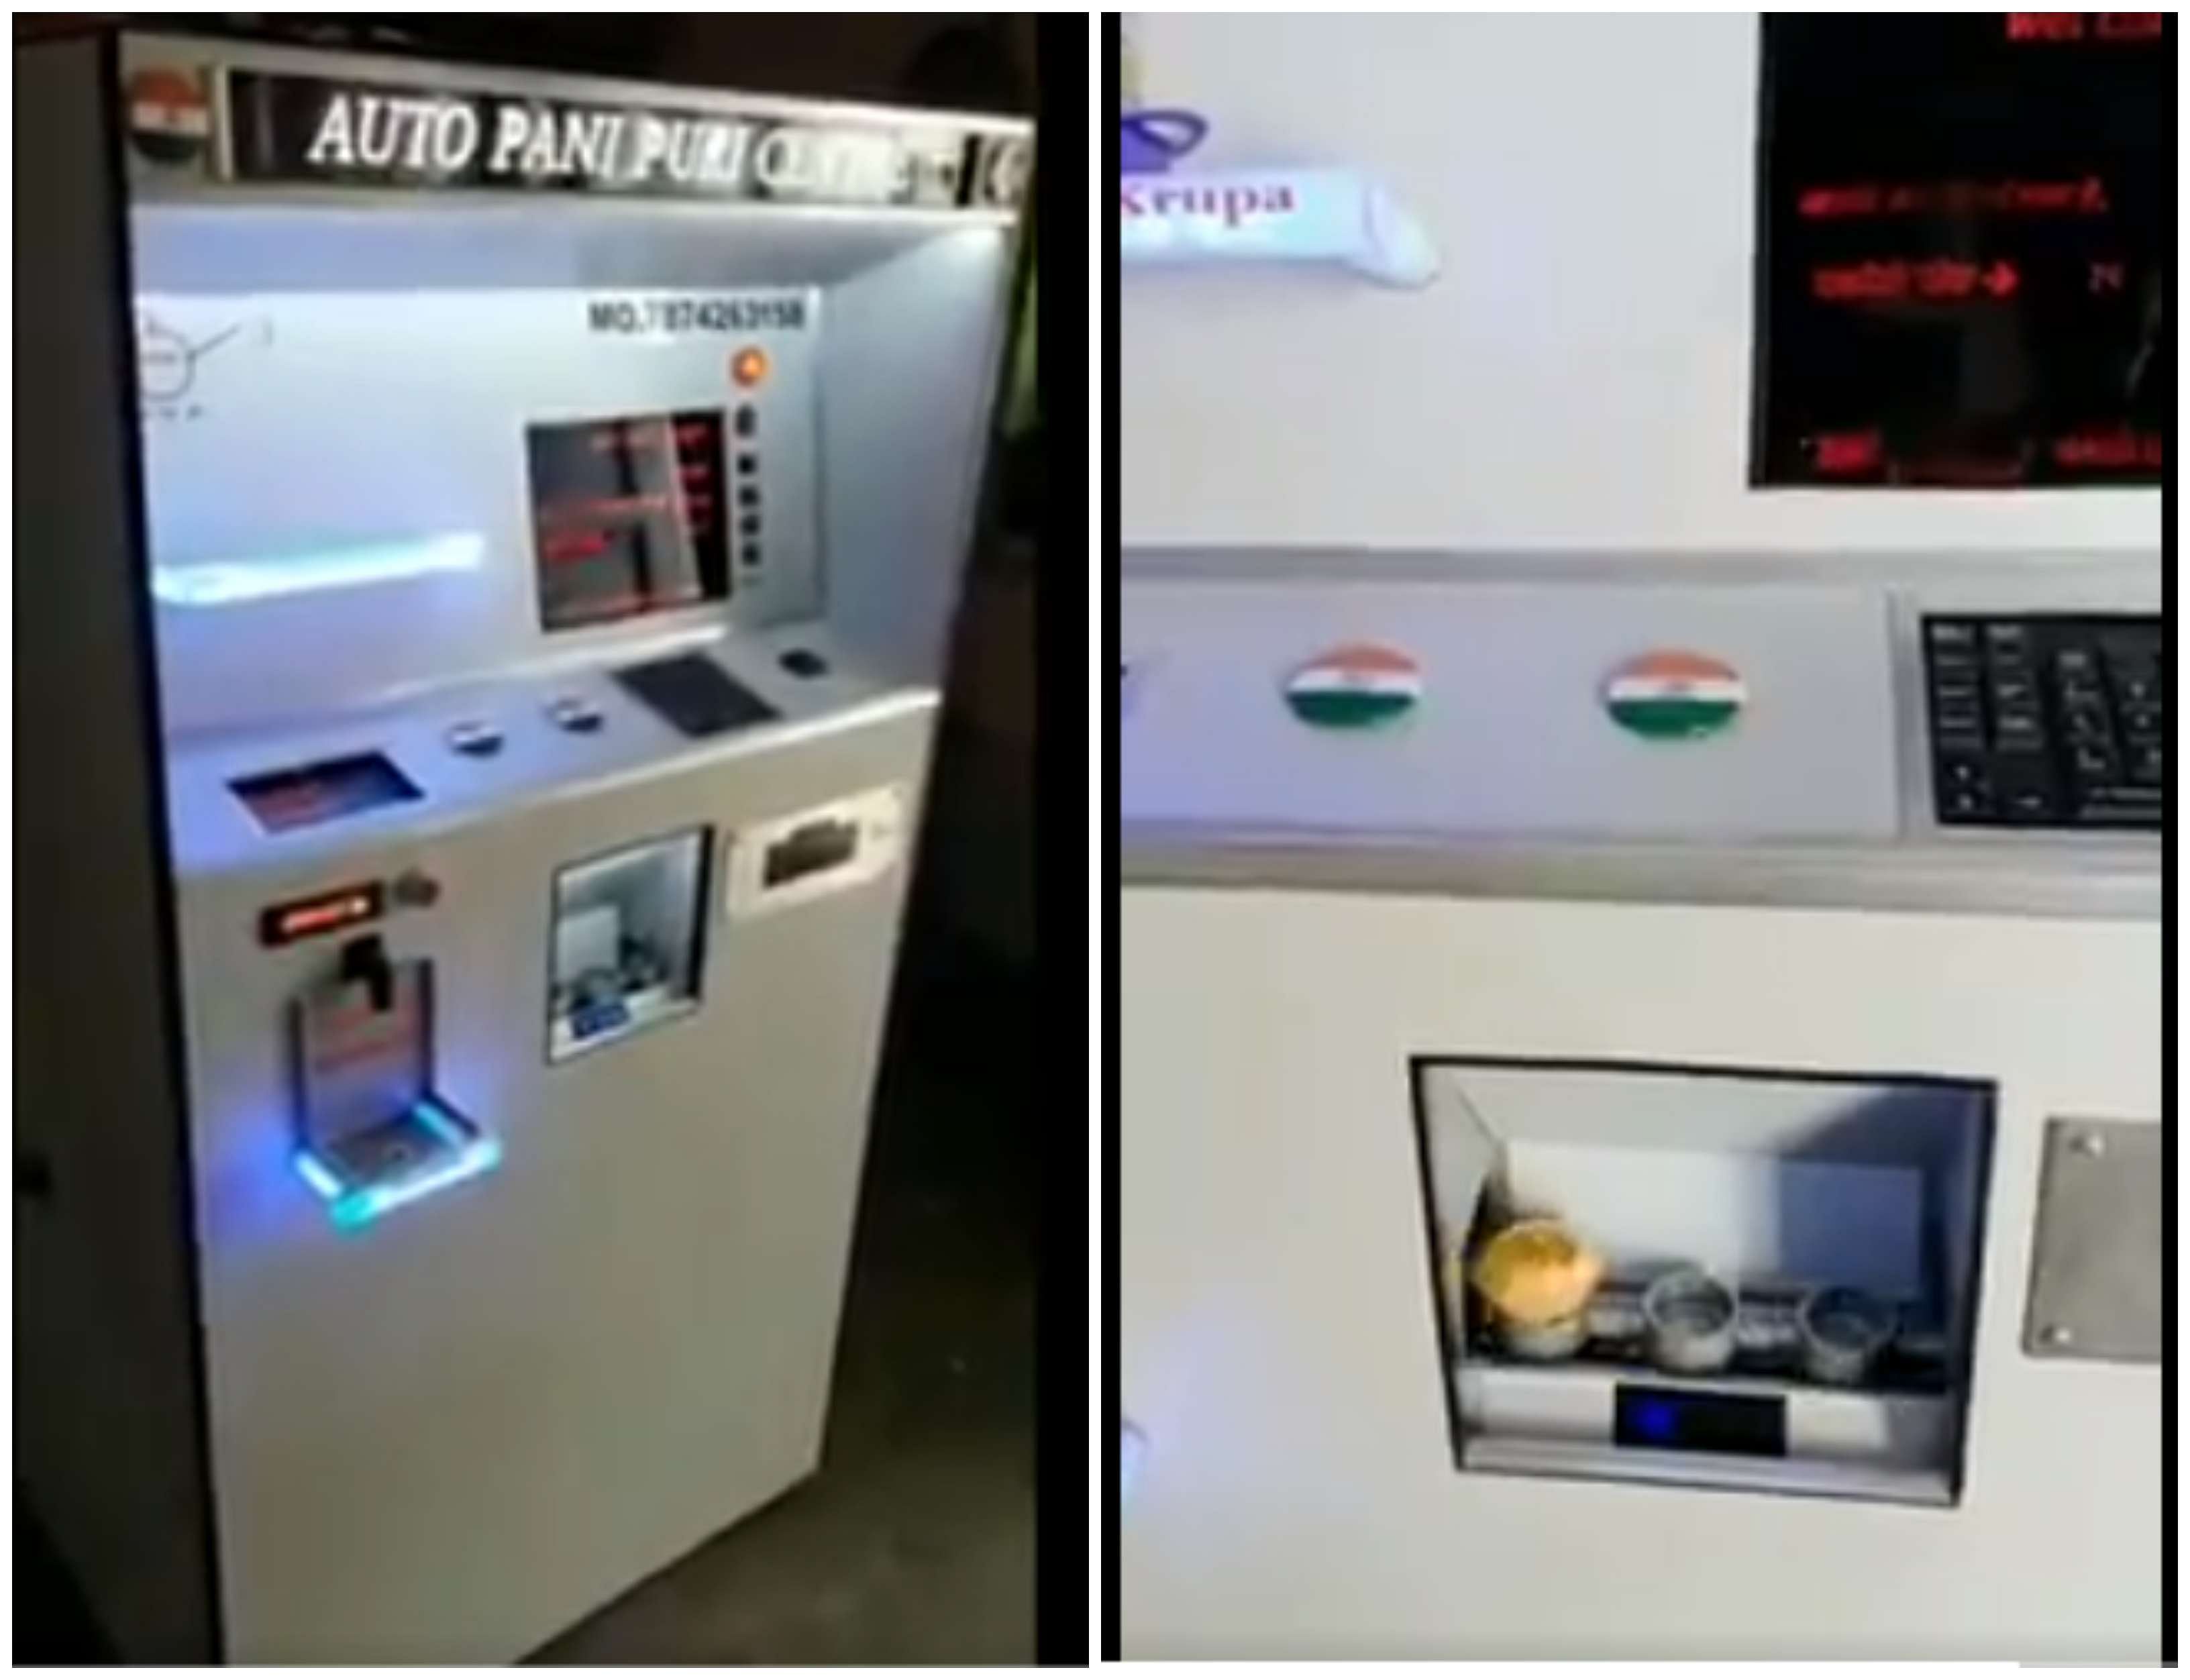 Pani puri dispenser machine. Photo Credit: Twitter